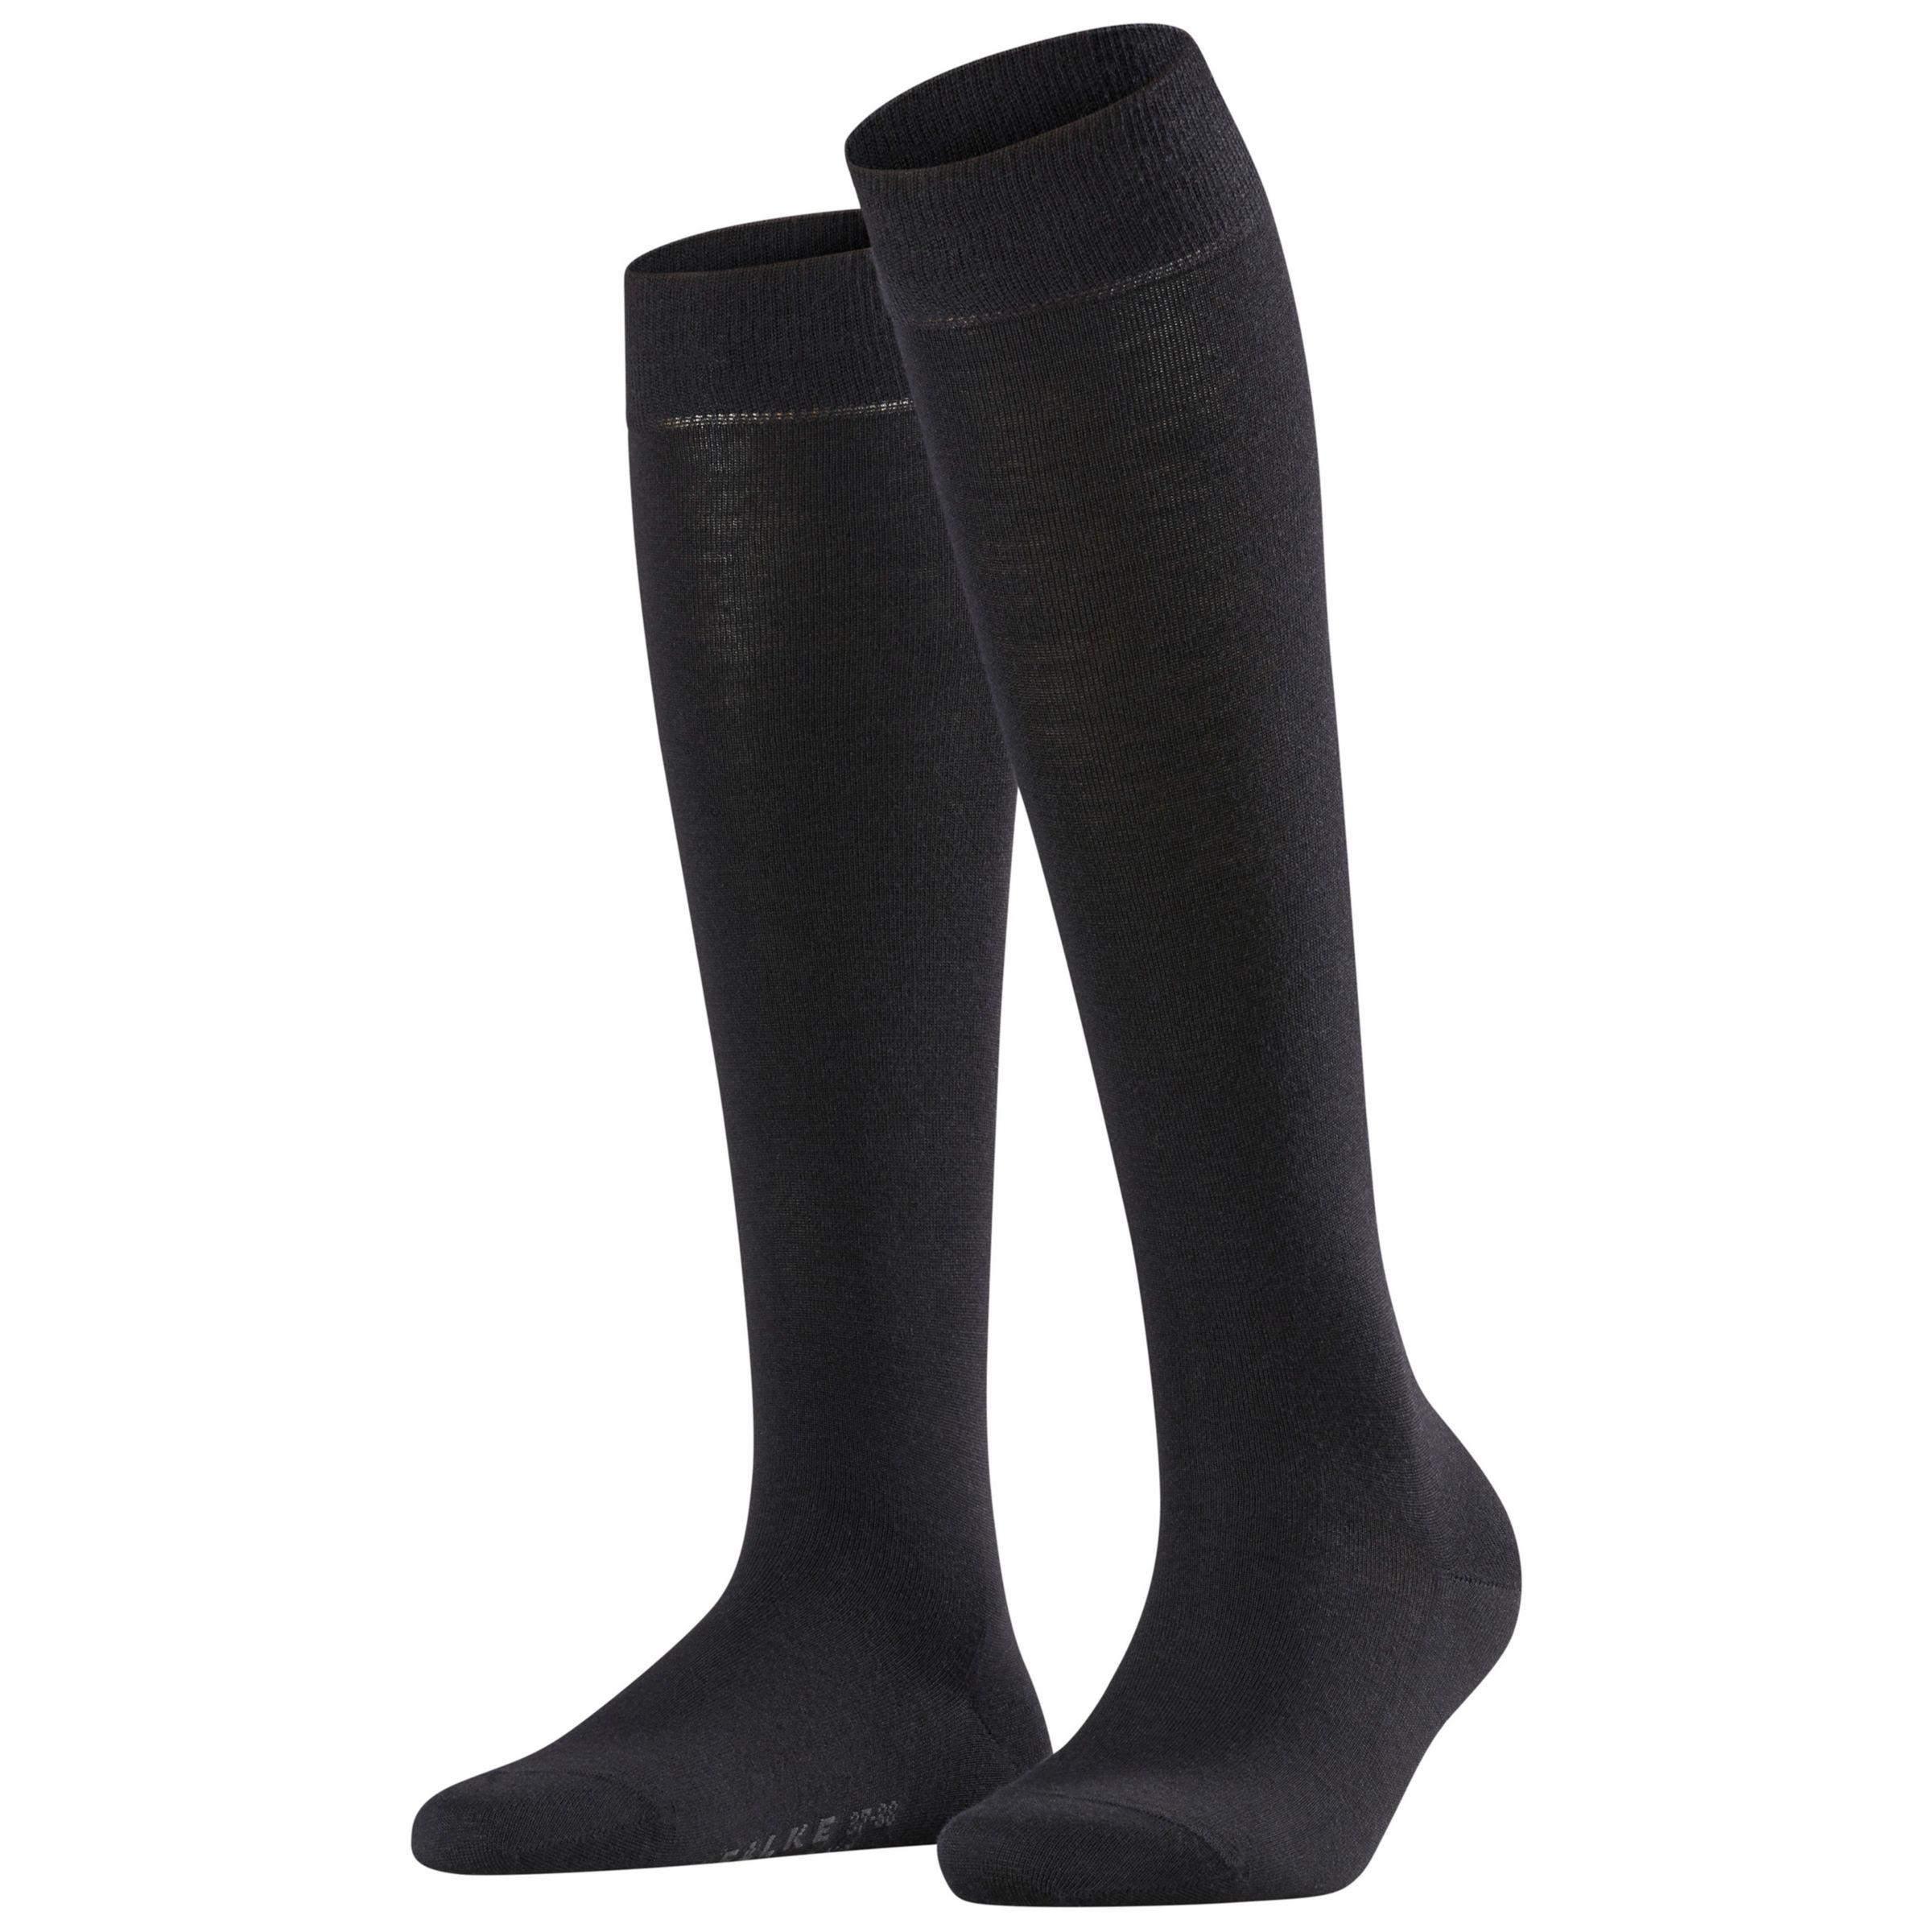 Buy FALKE Soft Merino Blend Knee High Socks Online at johnlewis.com